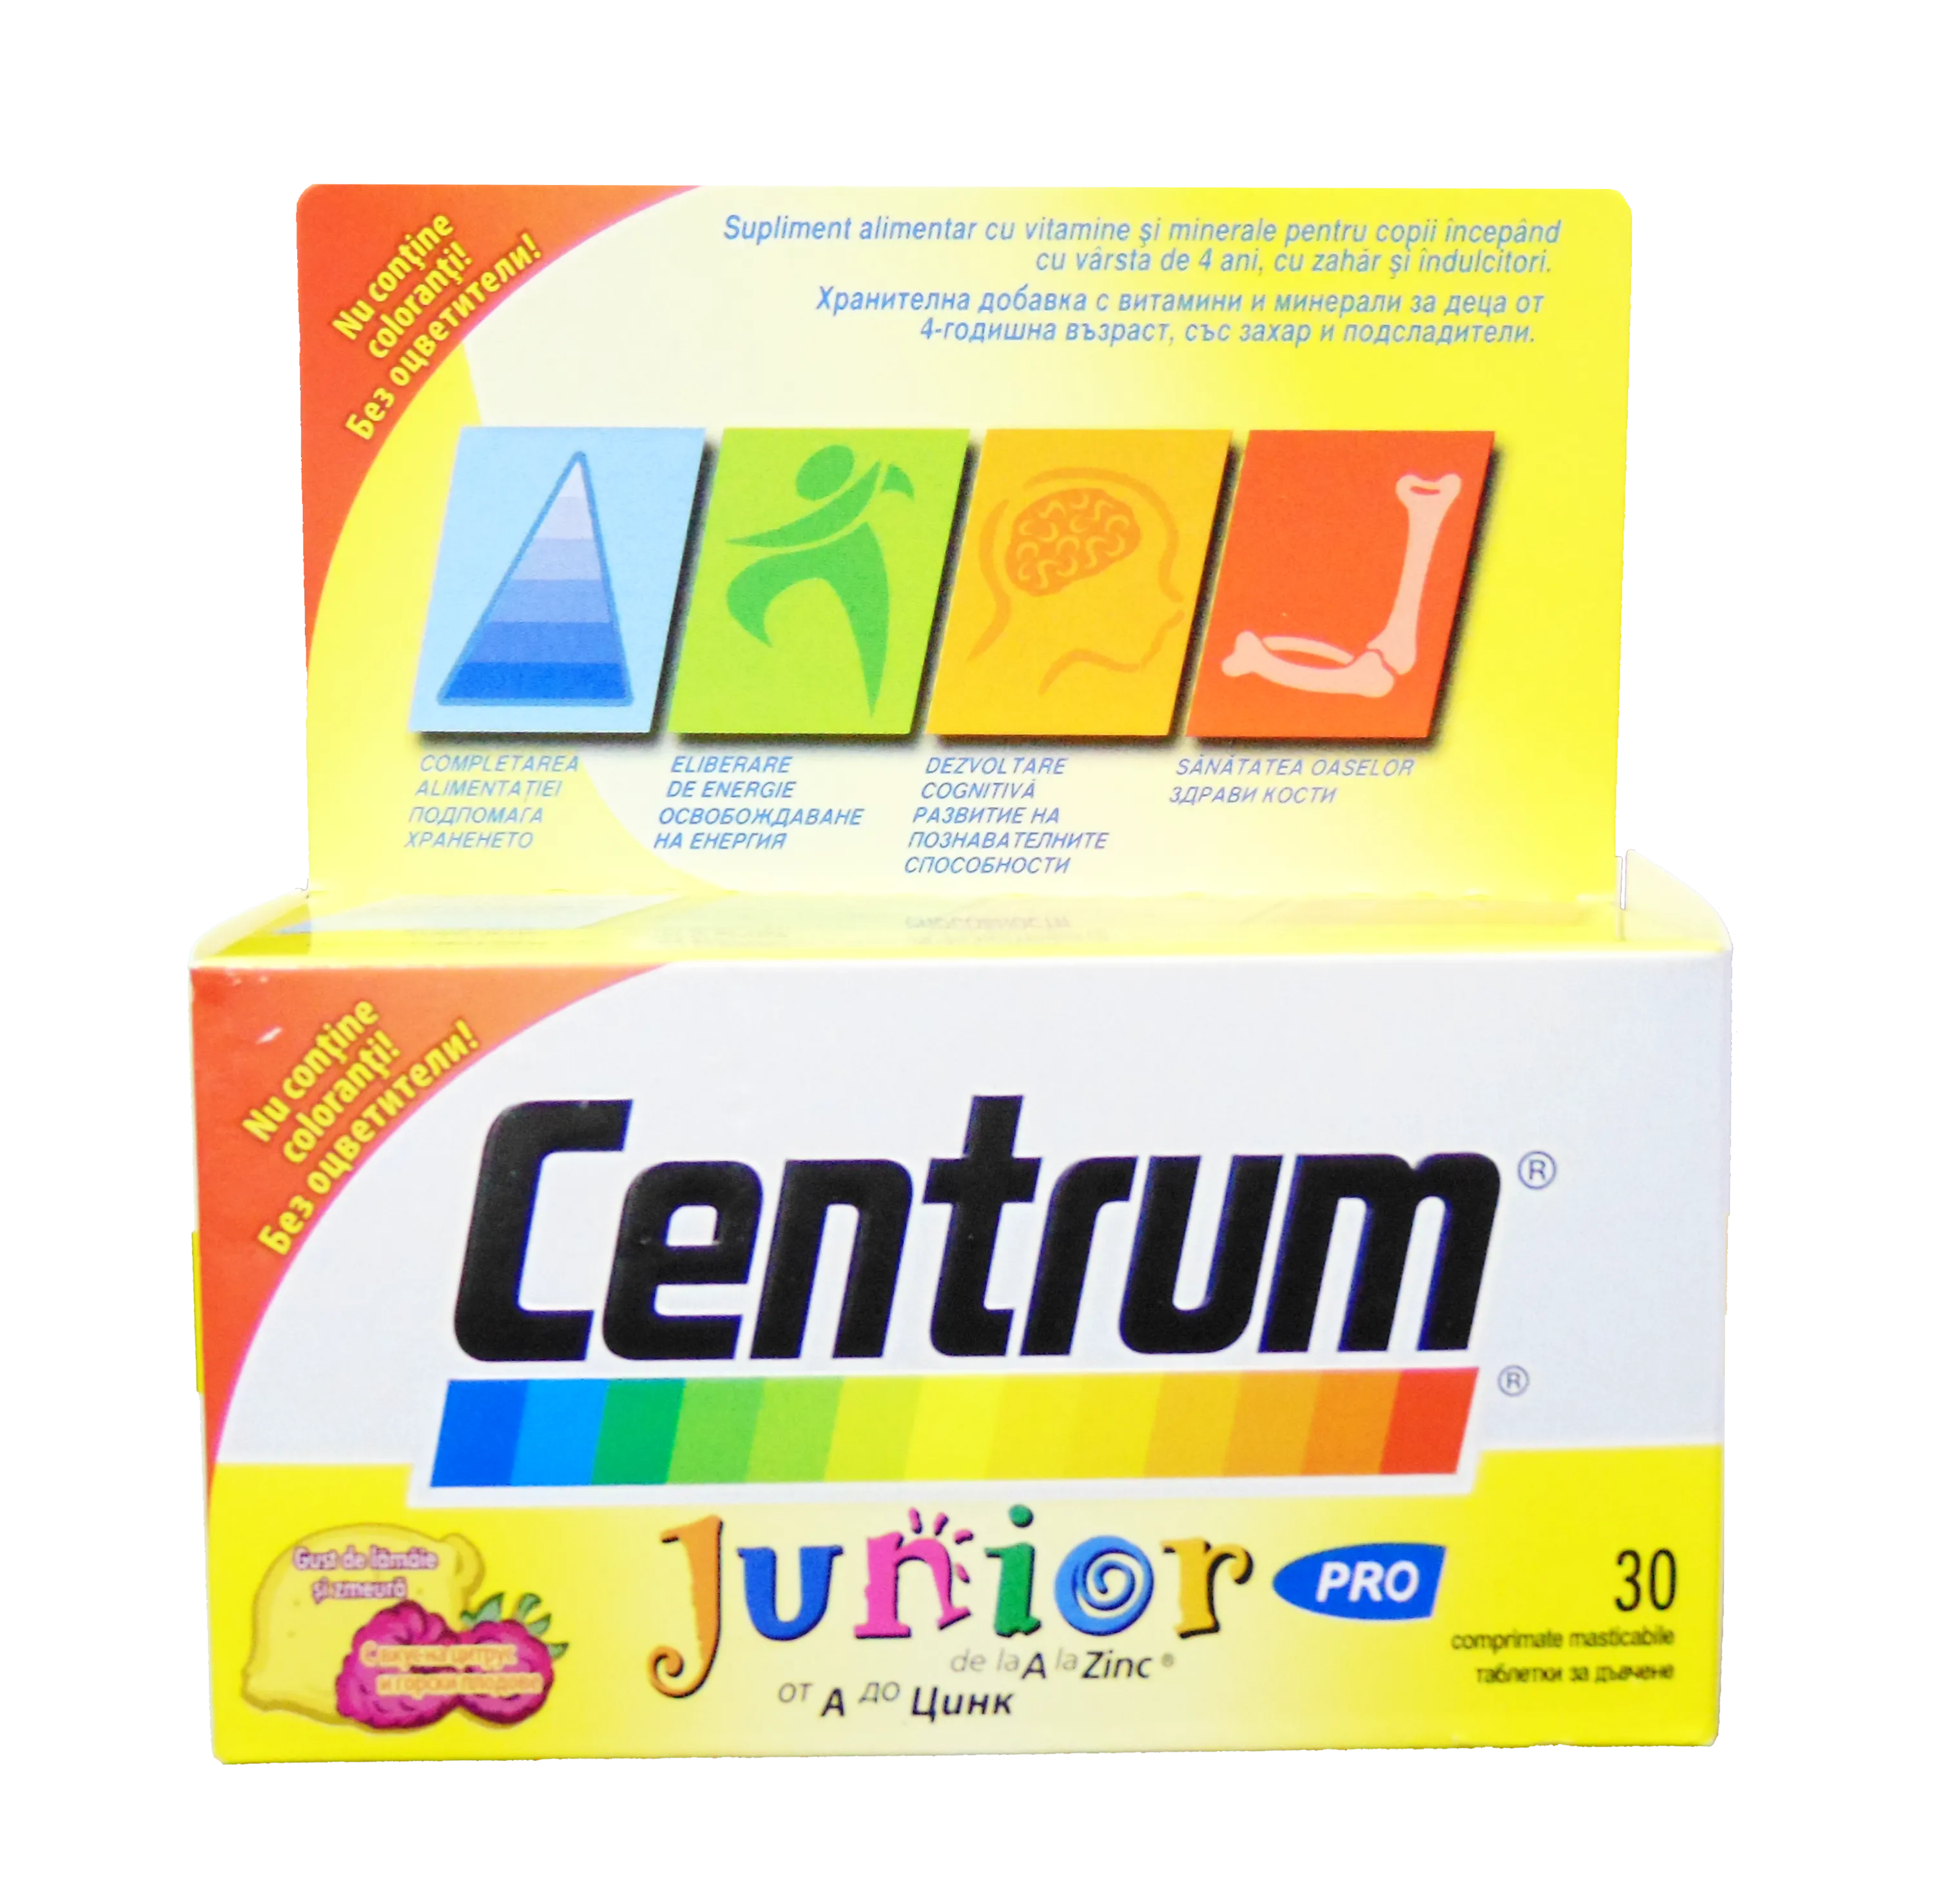 Vitamine - Centrum junior x 30 comprimate masticabile, medik-on.ro